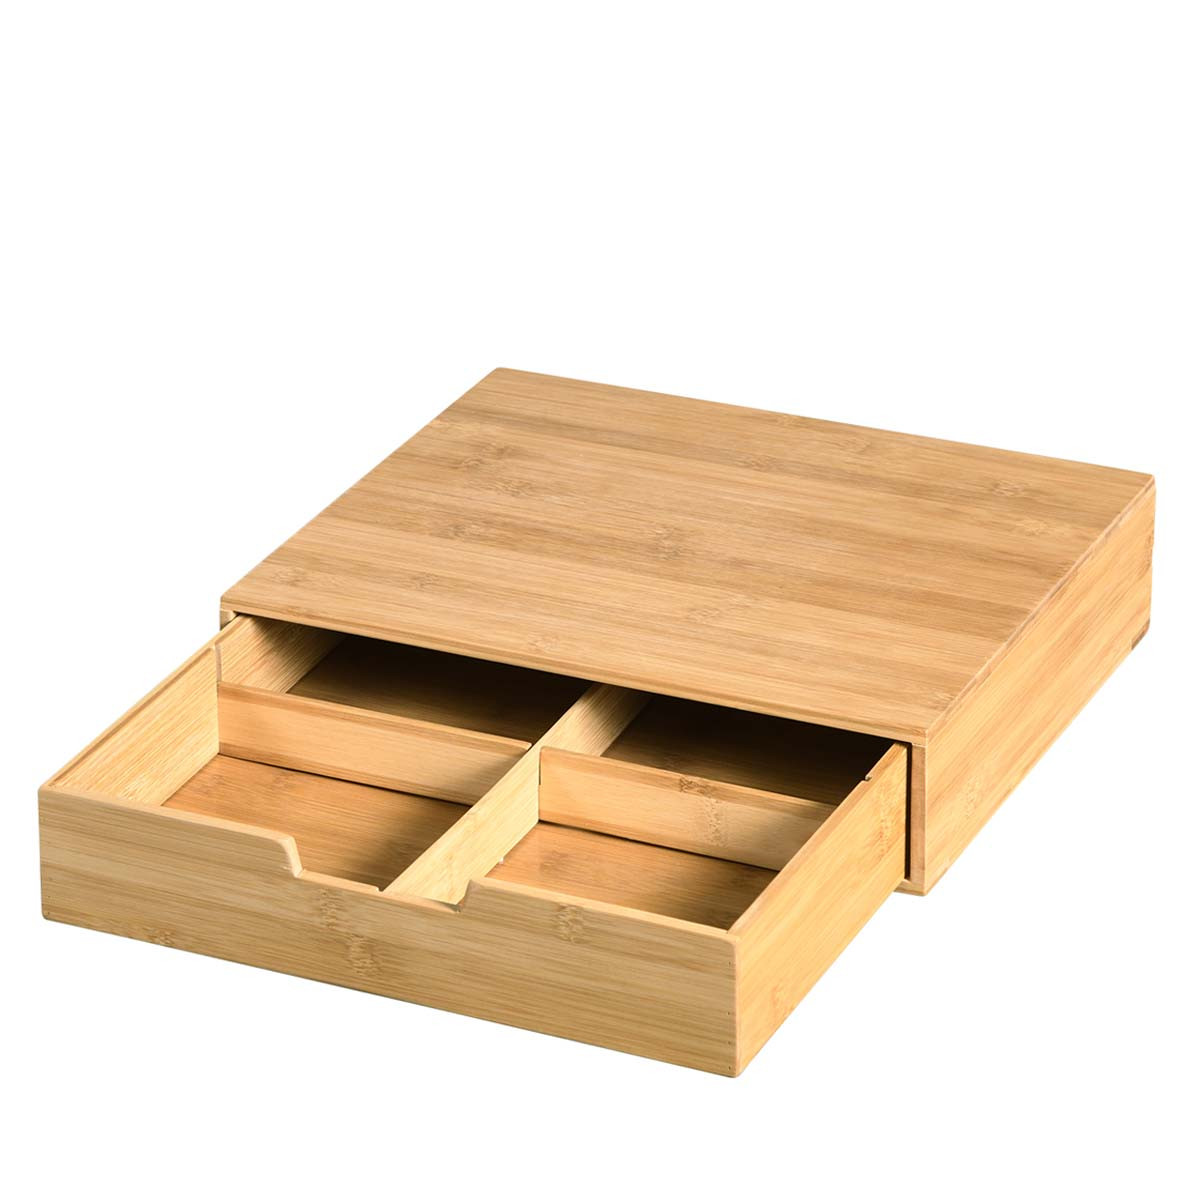 Boîte tiroir en bambou avec compartiments - 8x34x31cm - ON RANGE TOUT